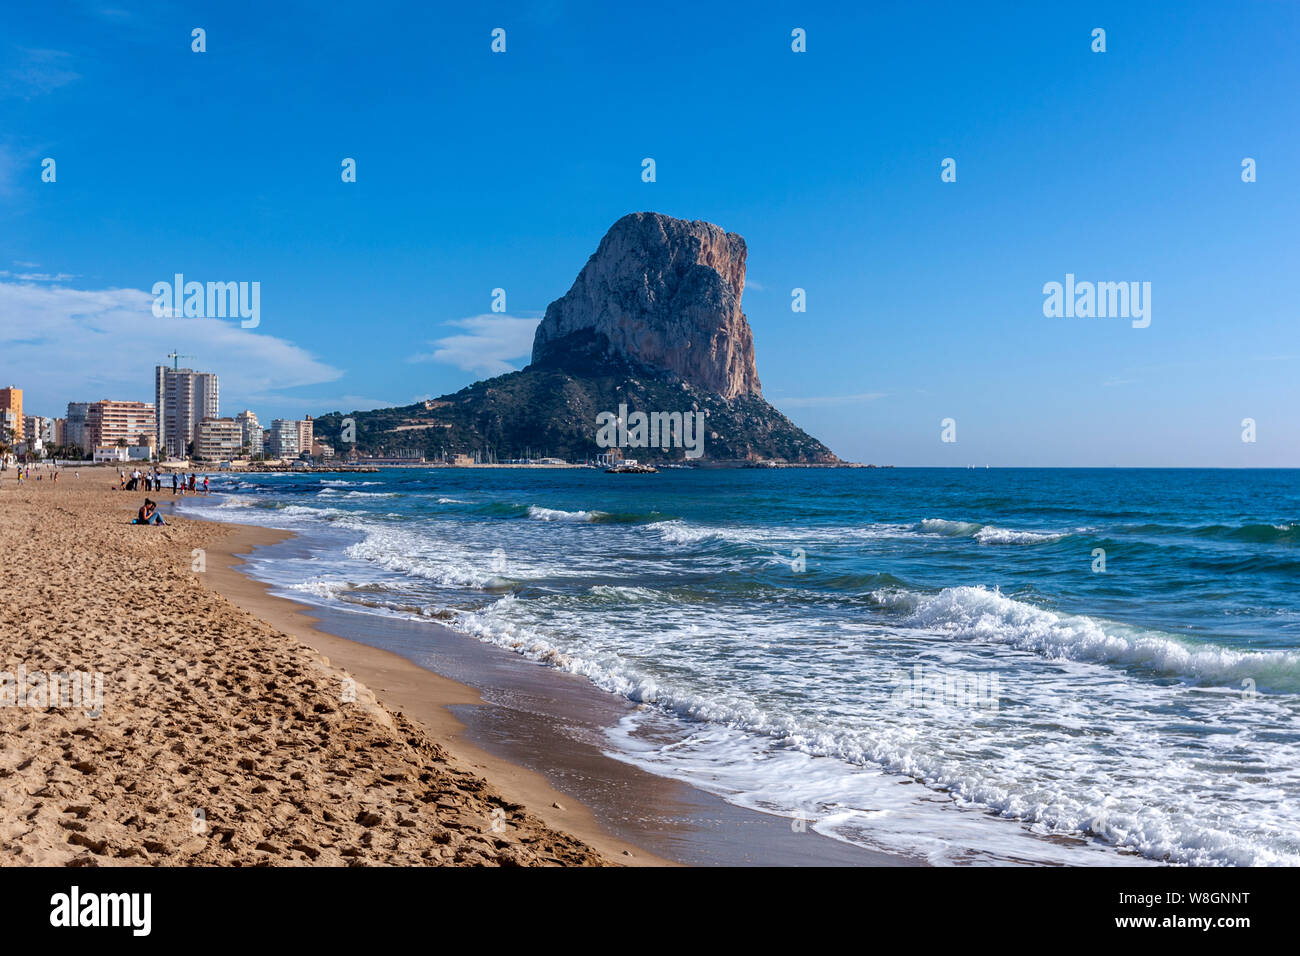 La Playa Arenal-Bol, Naturpark Penyal d'Ifac, Calpe, Alicante, Spanien Stockfoto